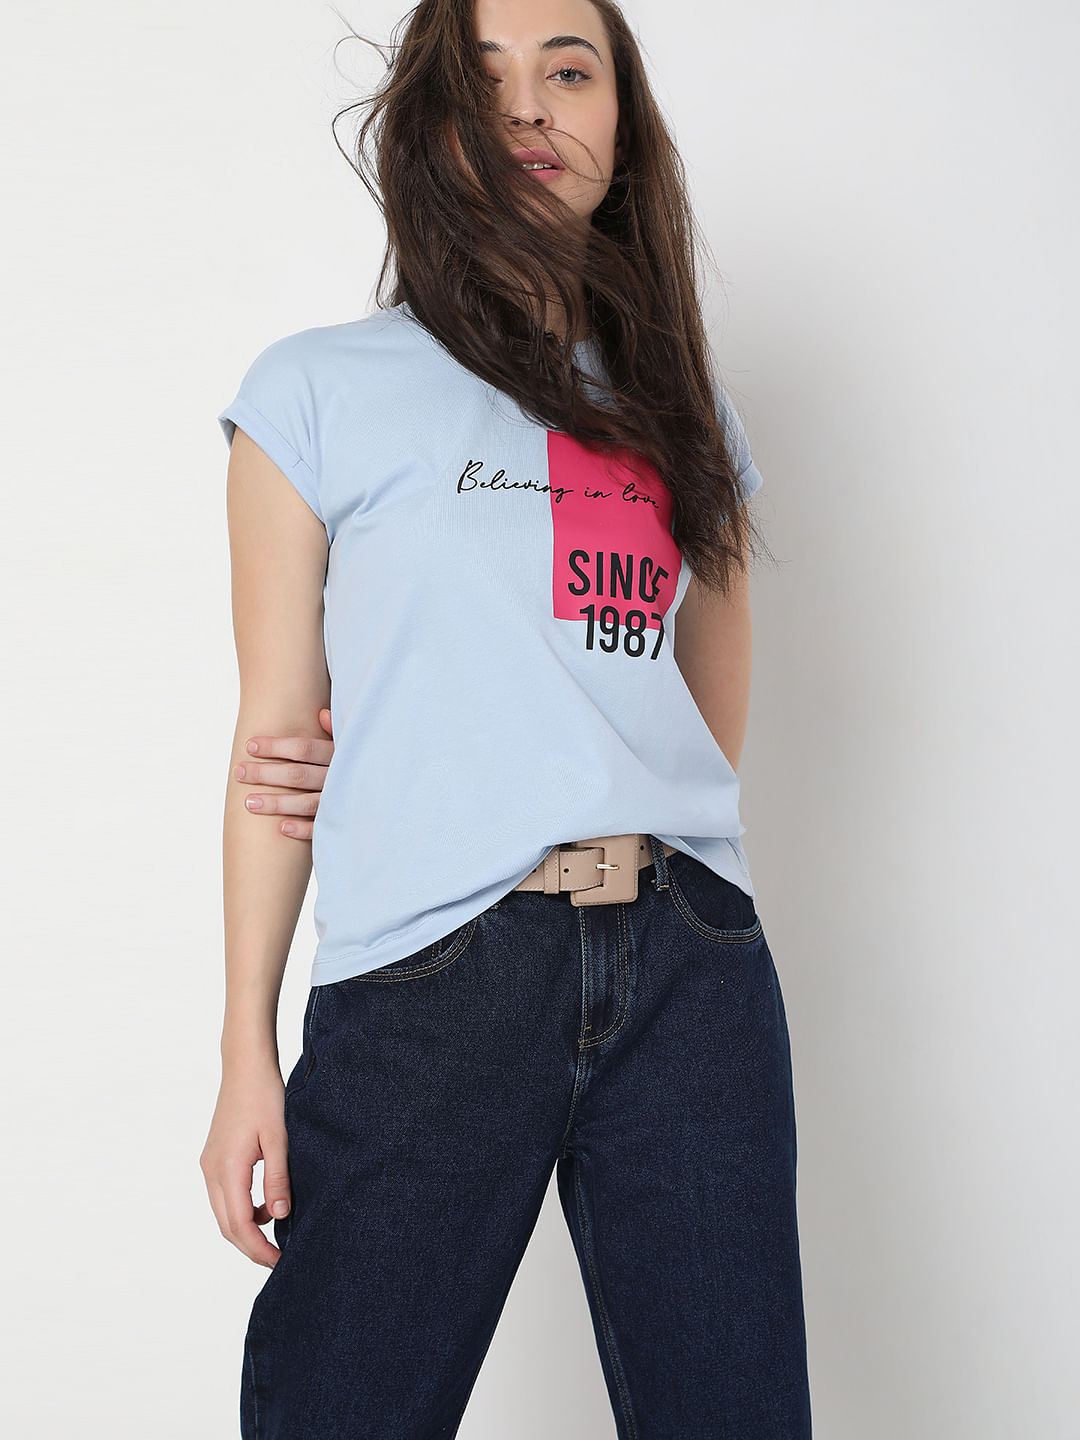 discount 67% Beige XL ACETATO Shirt WOMEN FASHION Shirts & T-shirts Shirt Casual 